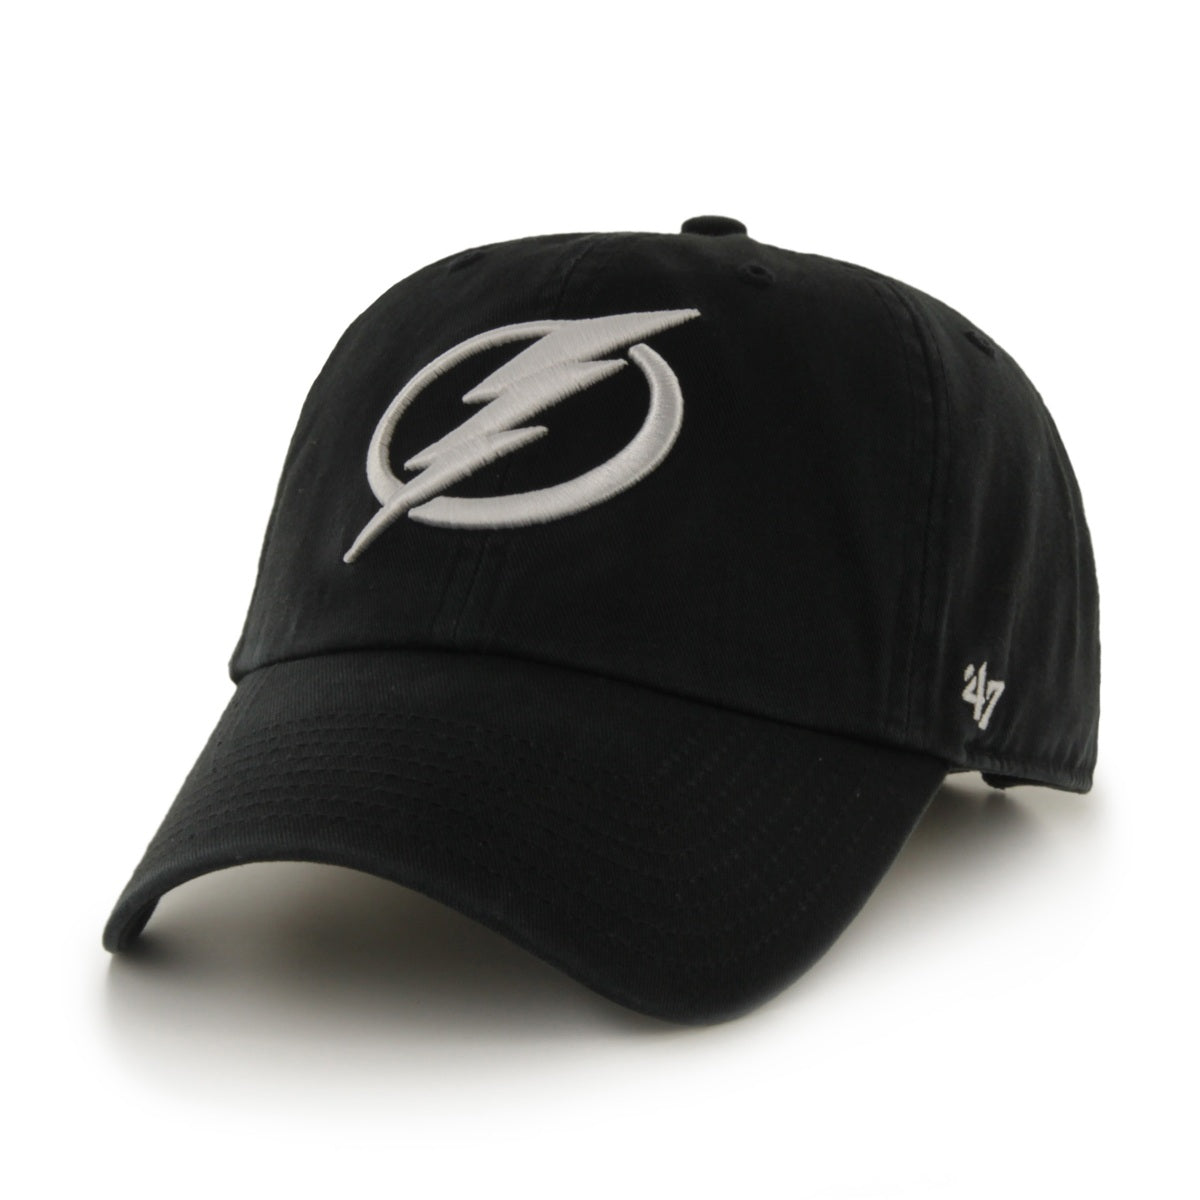 Tampa Bay Lightning '47 Black Adjustable Clean Up Hat